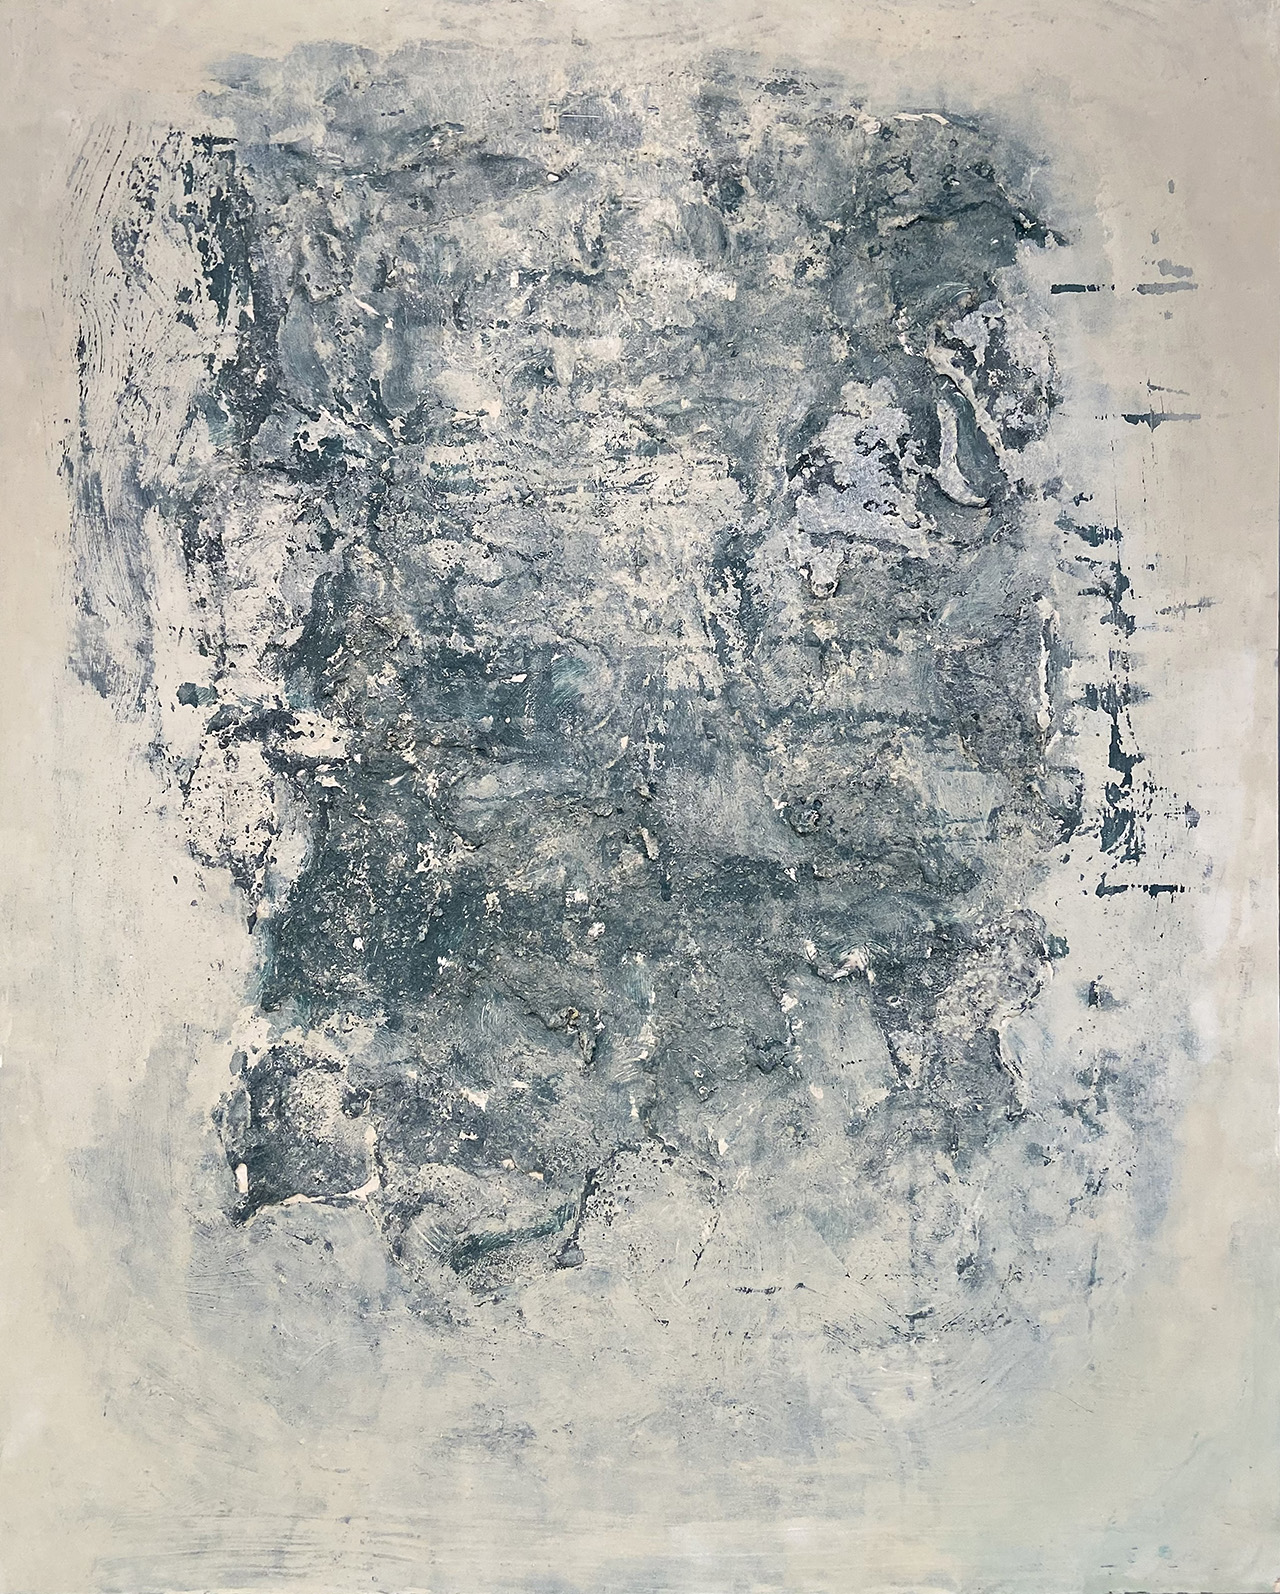 Pintura abstracta de Patricia Vega-Hazas con texturas grises